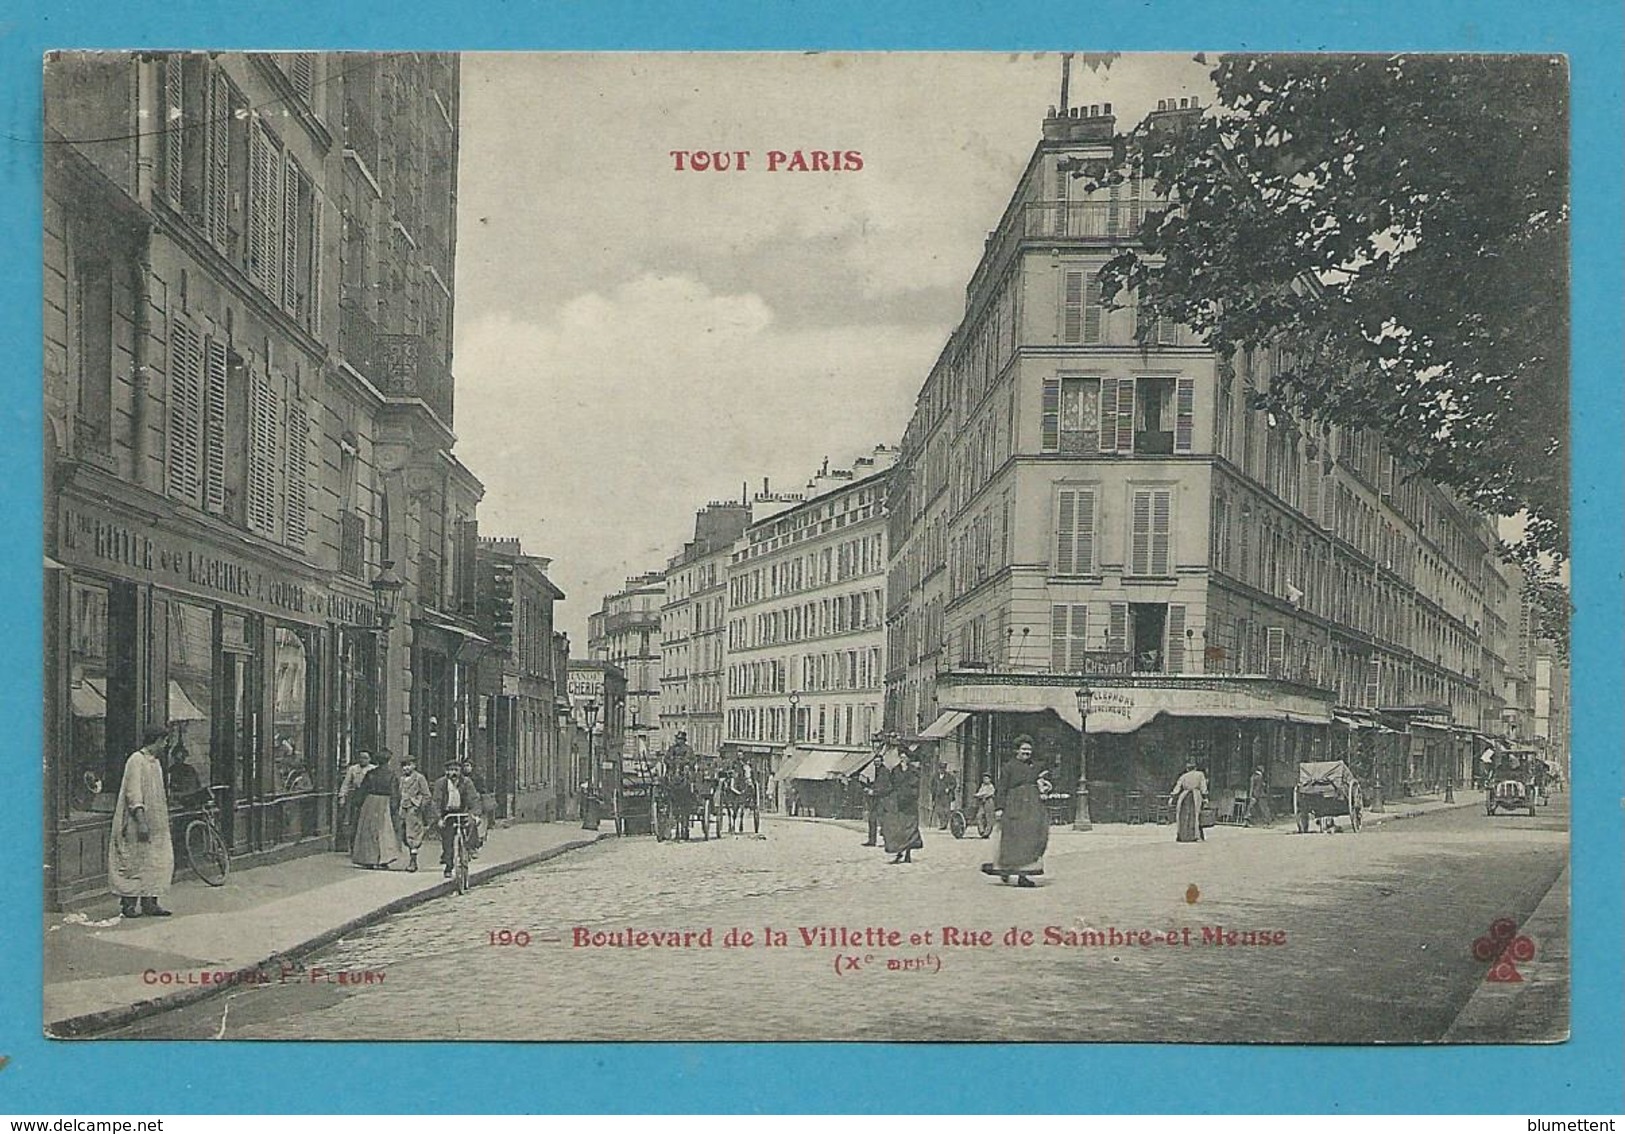 CPA TOUT PARIS 190 - Boulevard De La Villette Et Rue De Sambre-et-Meuse (Xème Arrt) Ed. FLEURY - Distrito: 20